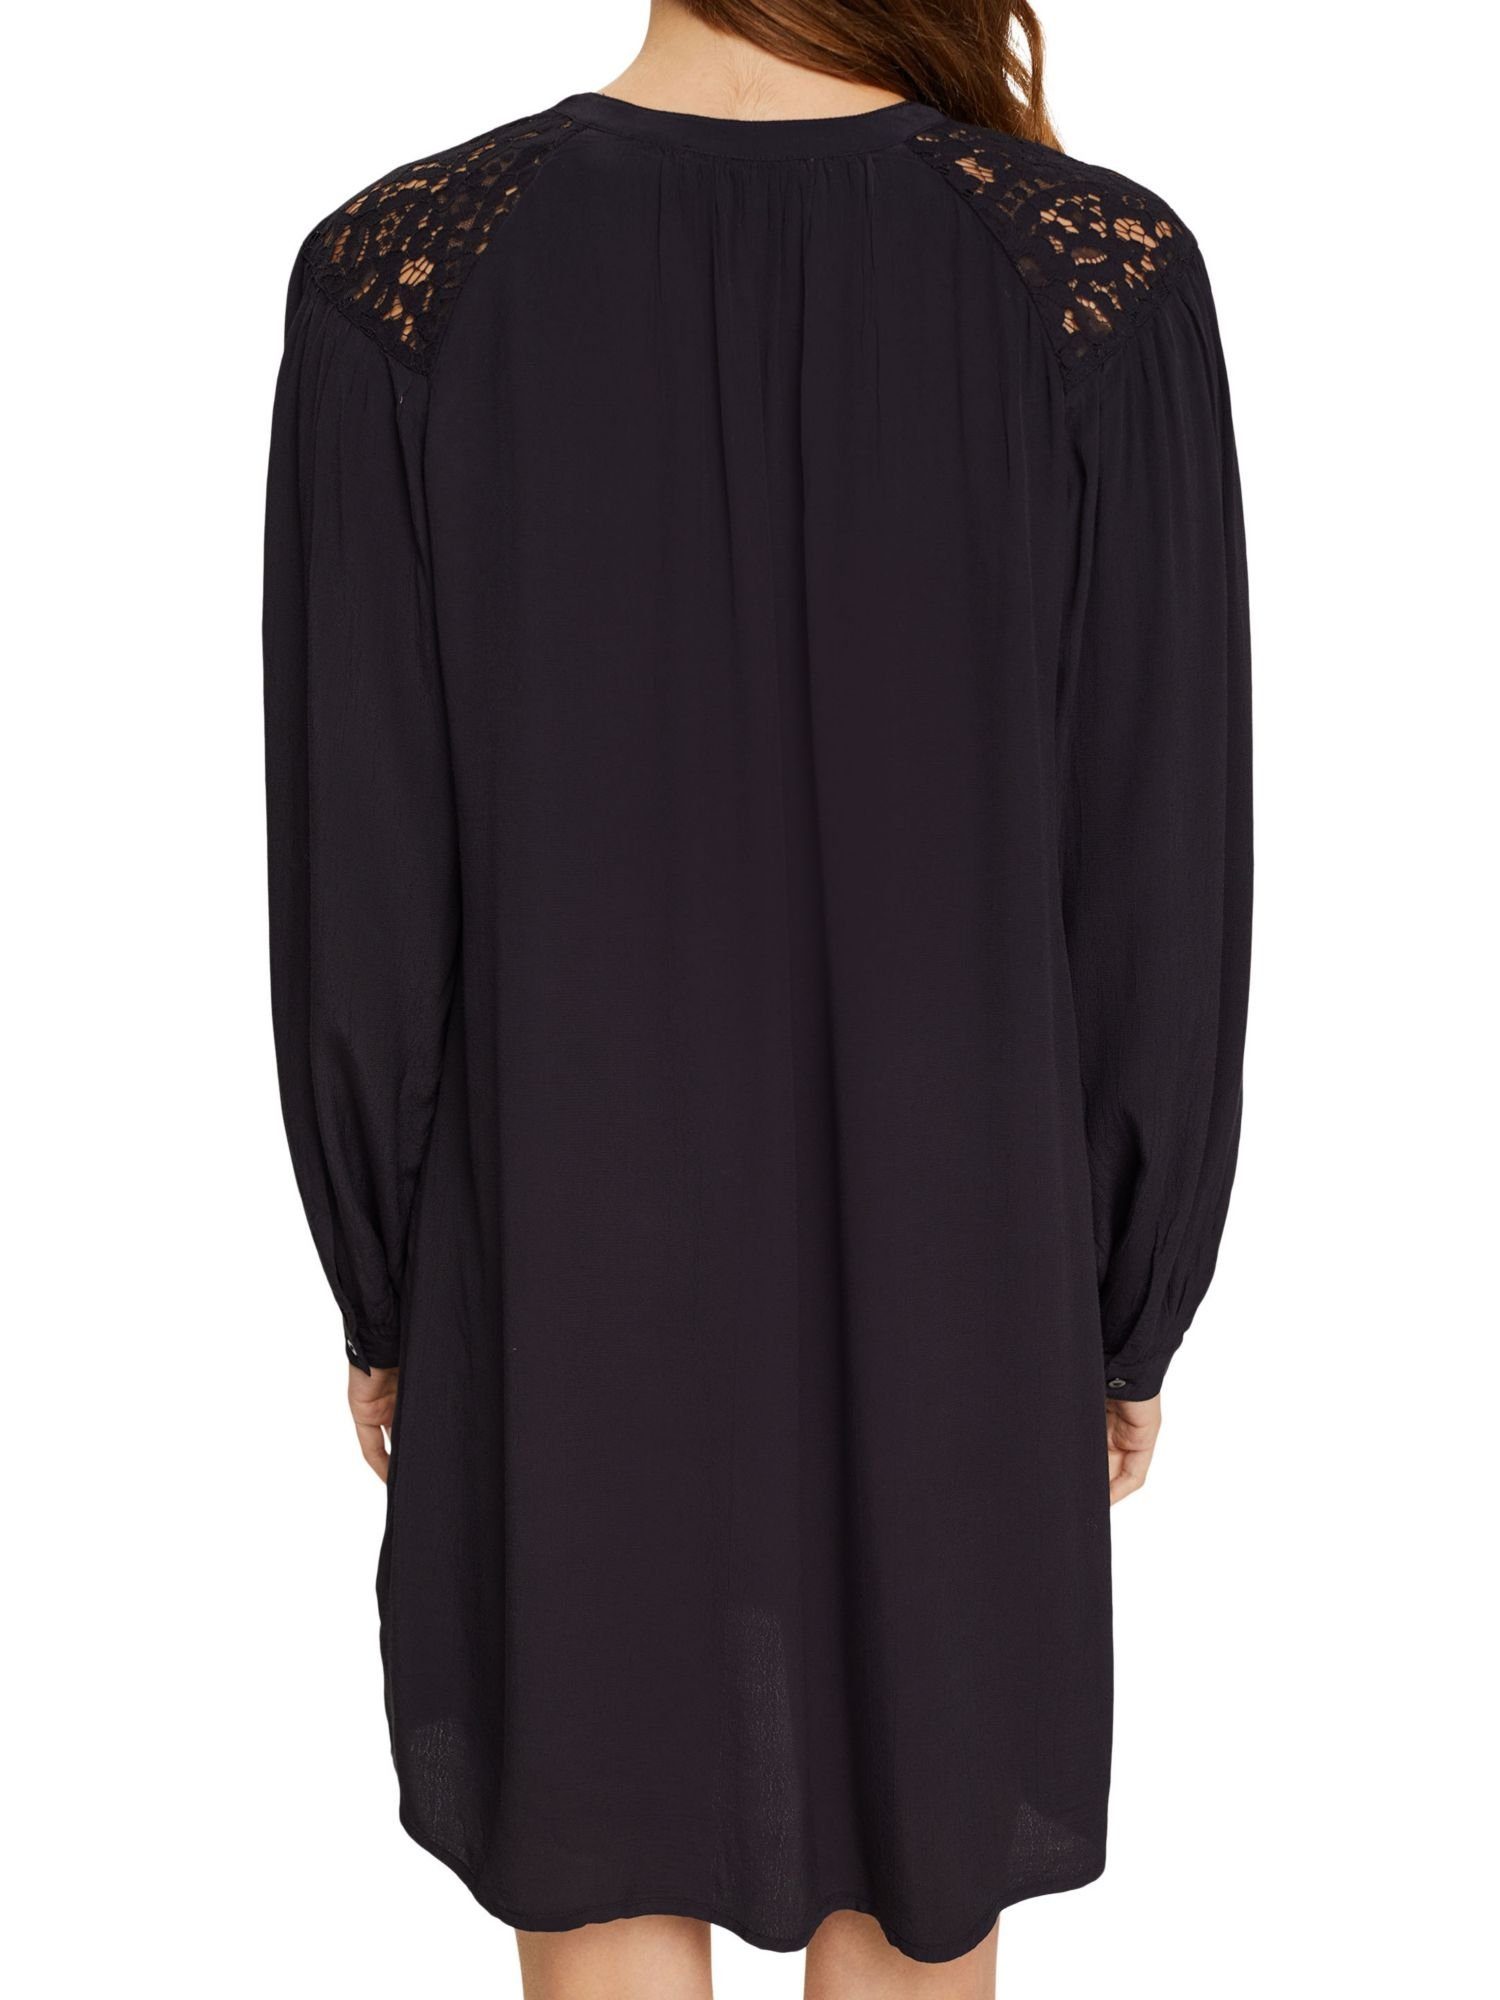 Esprit Spitzendetails Minikleid Kleid by edc BLACK mit